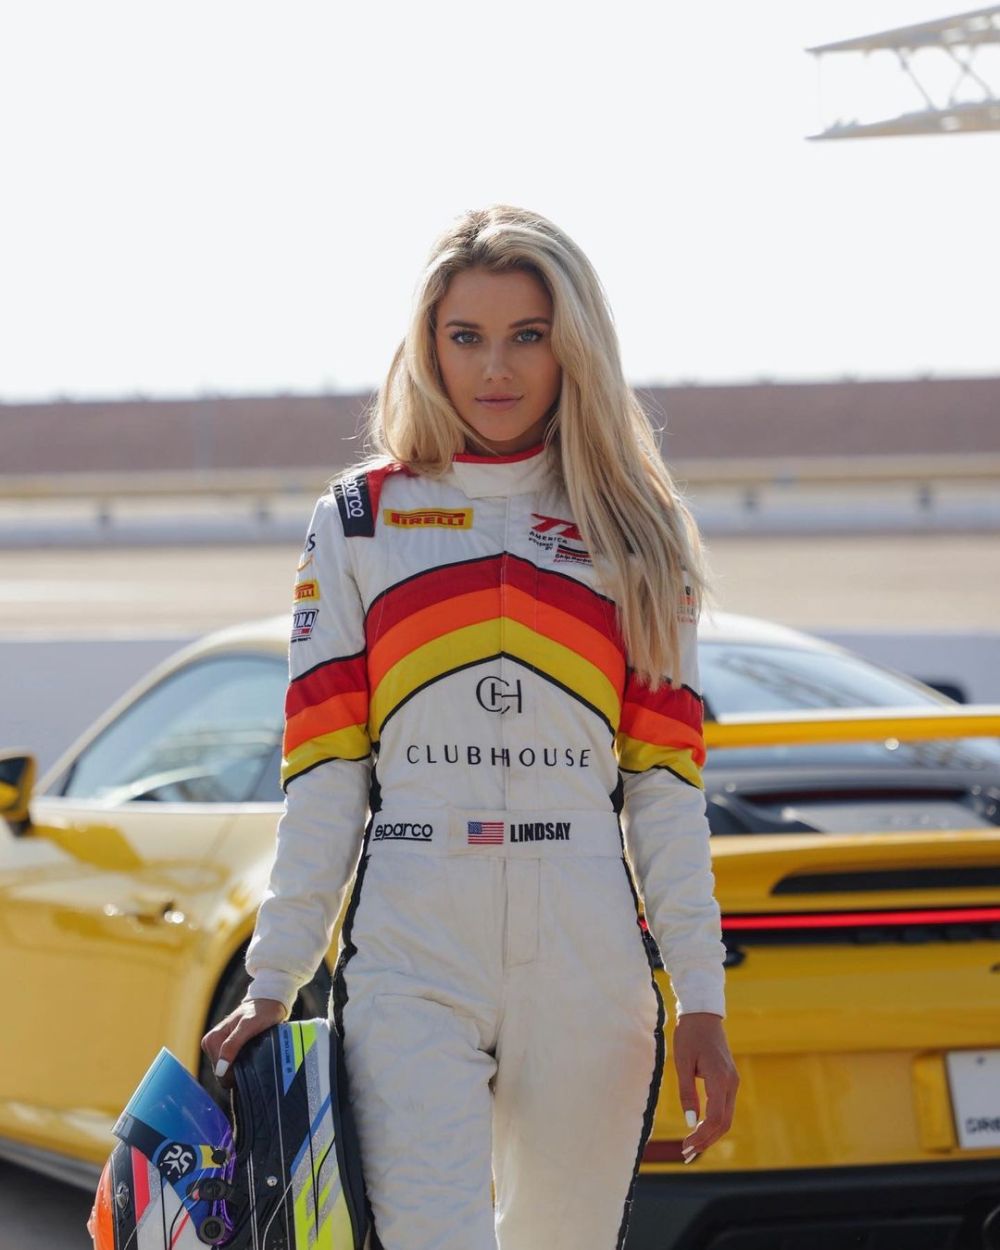 "O altă blondă fraieră!". Pilotul de IndyCar care dărâmă stereotipuri, apariție spectaculoasă în vacanță _14